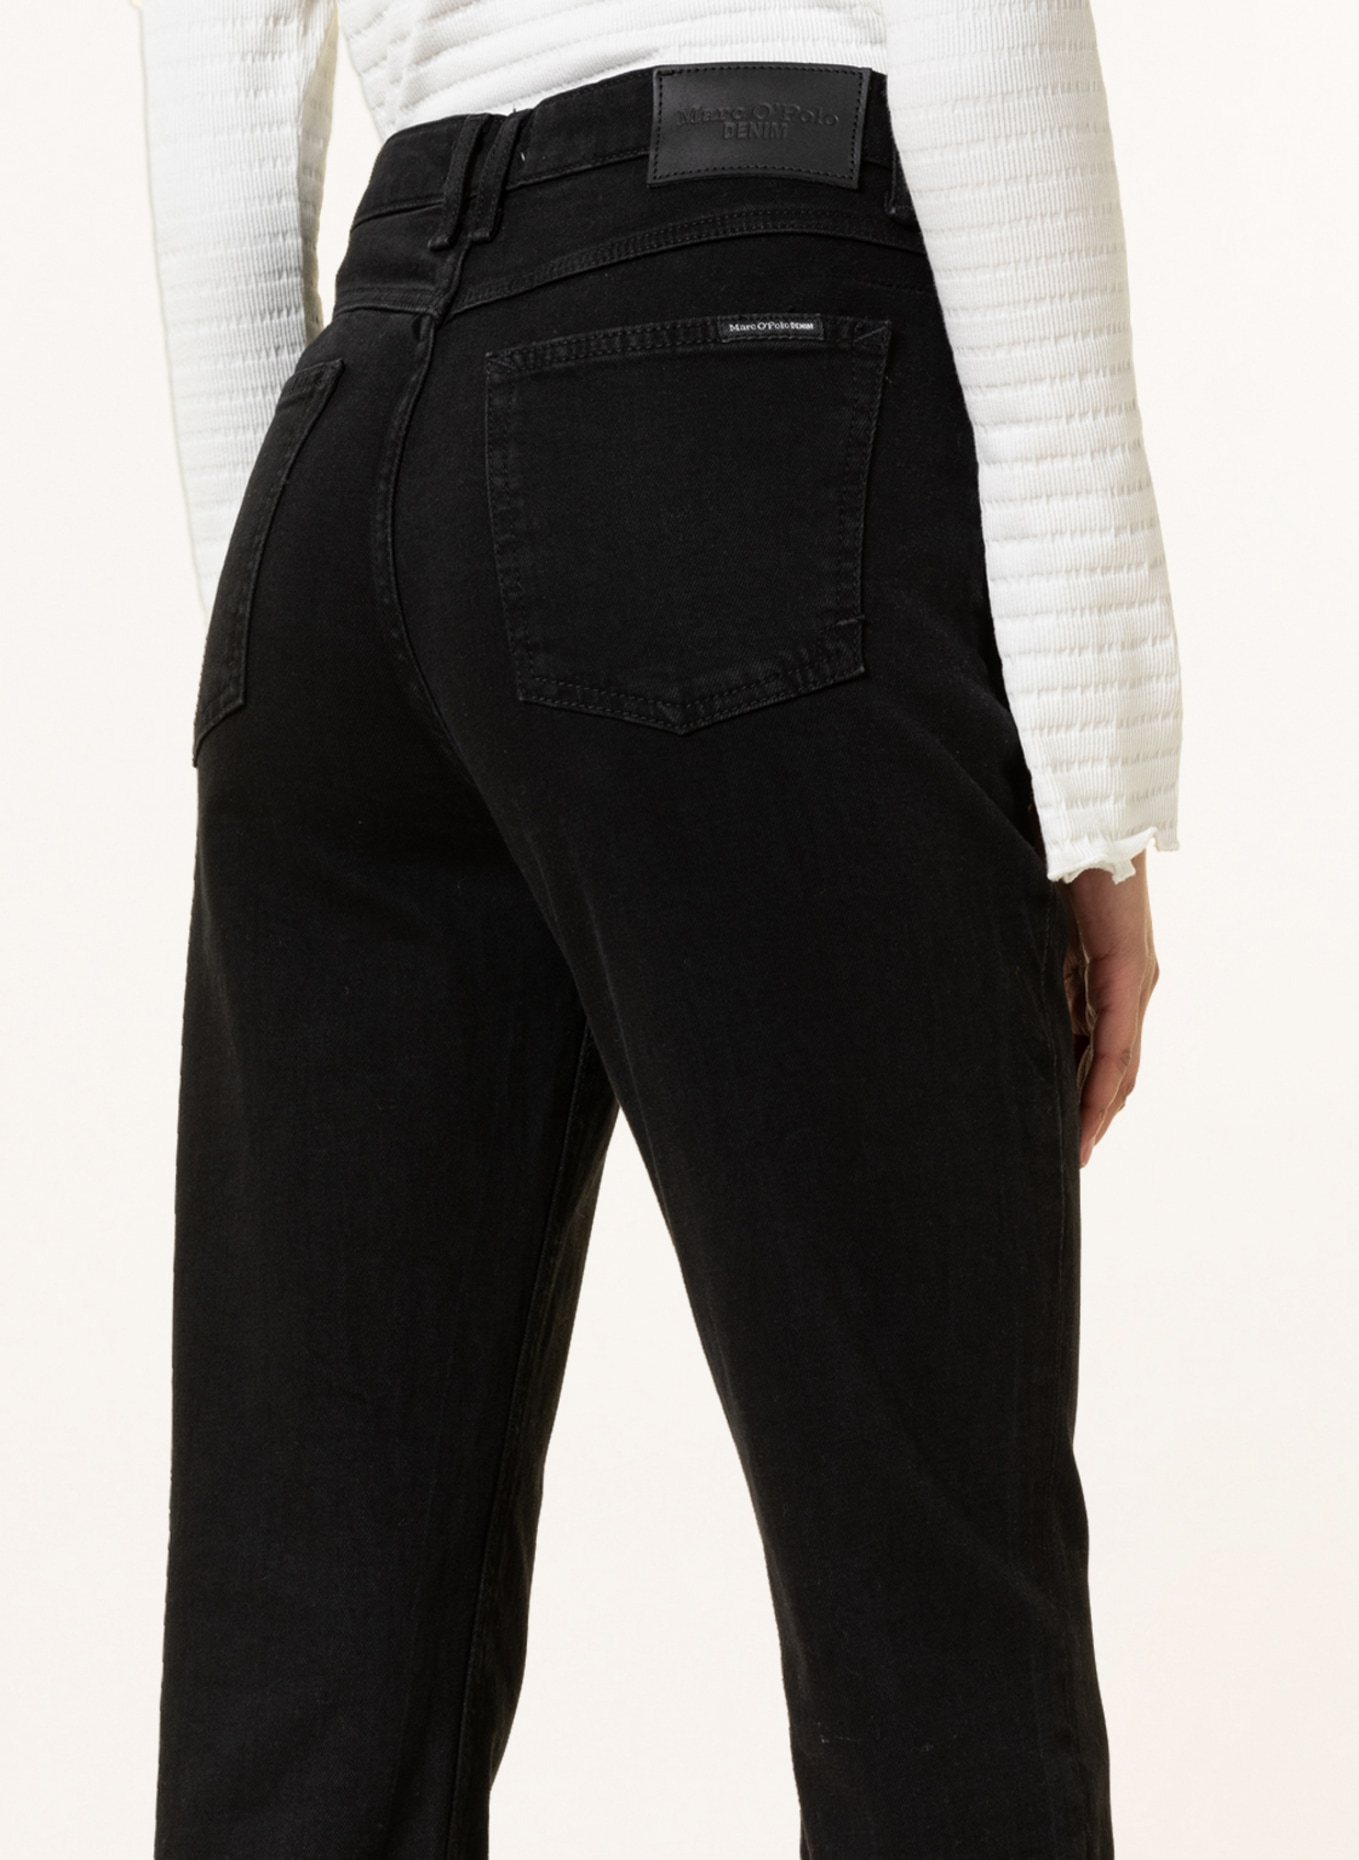 Marc O'Polo DENIM Boyfriend jeans, Color: Q14 multi/vintage black (Image 5)